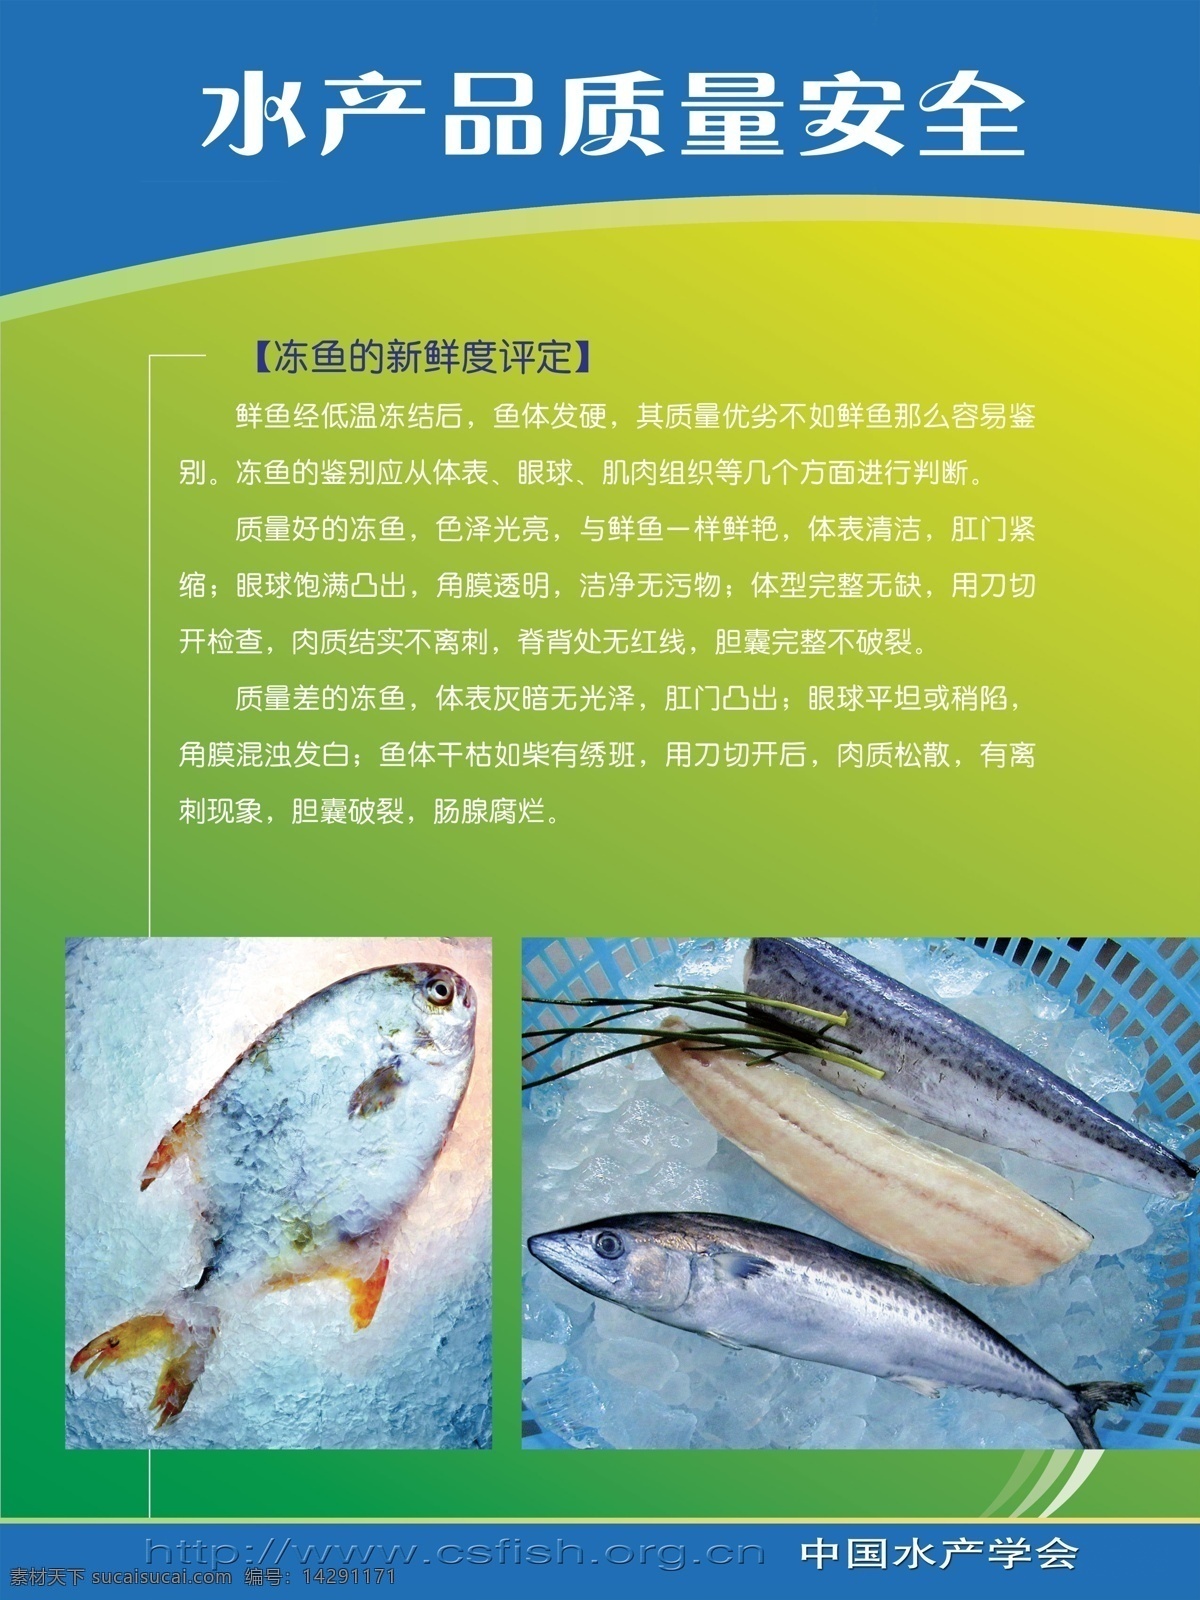 水产品 质量安全 鱼 冷冻 新鲜程度 生活百科 餐饮美食